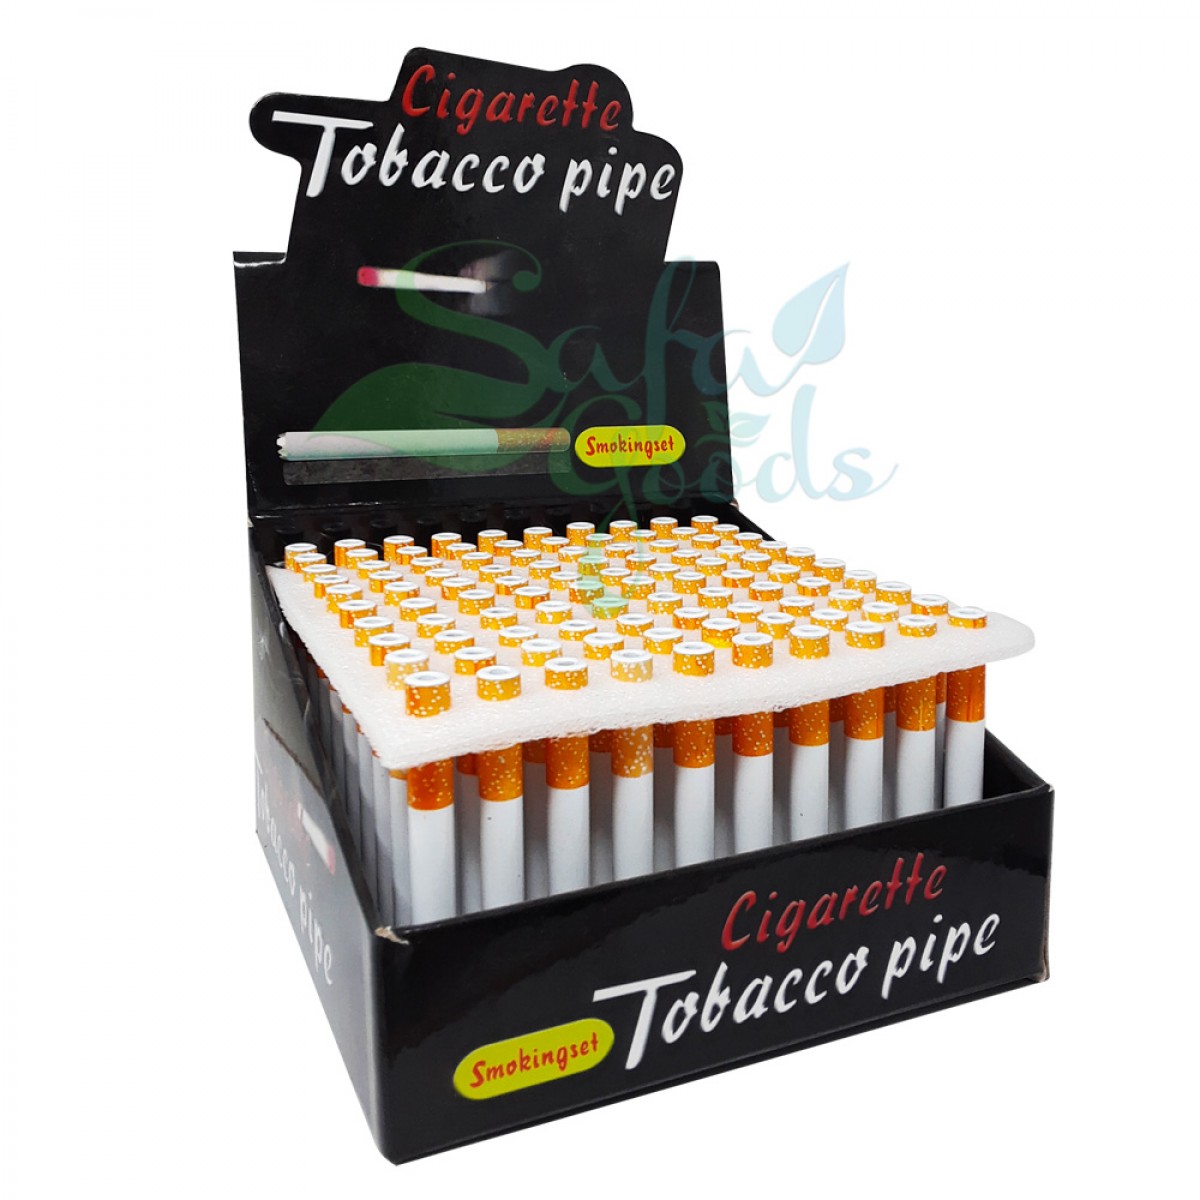 Cigarette Tobacco Pipe Display 100CT